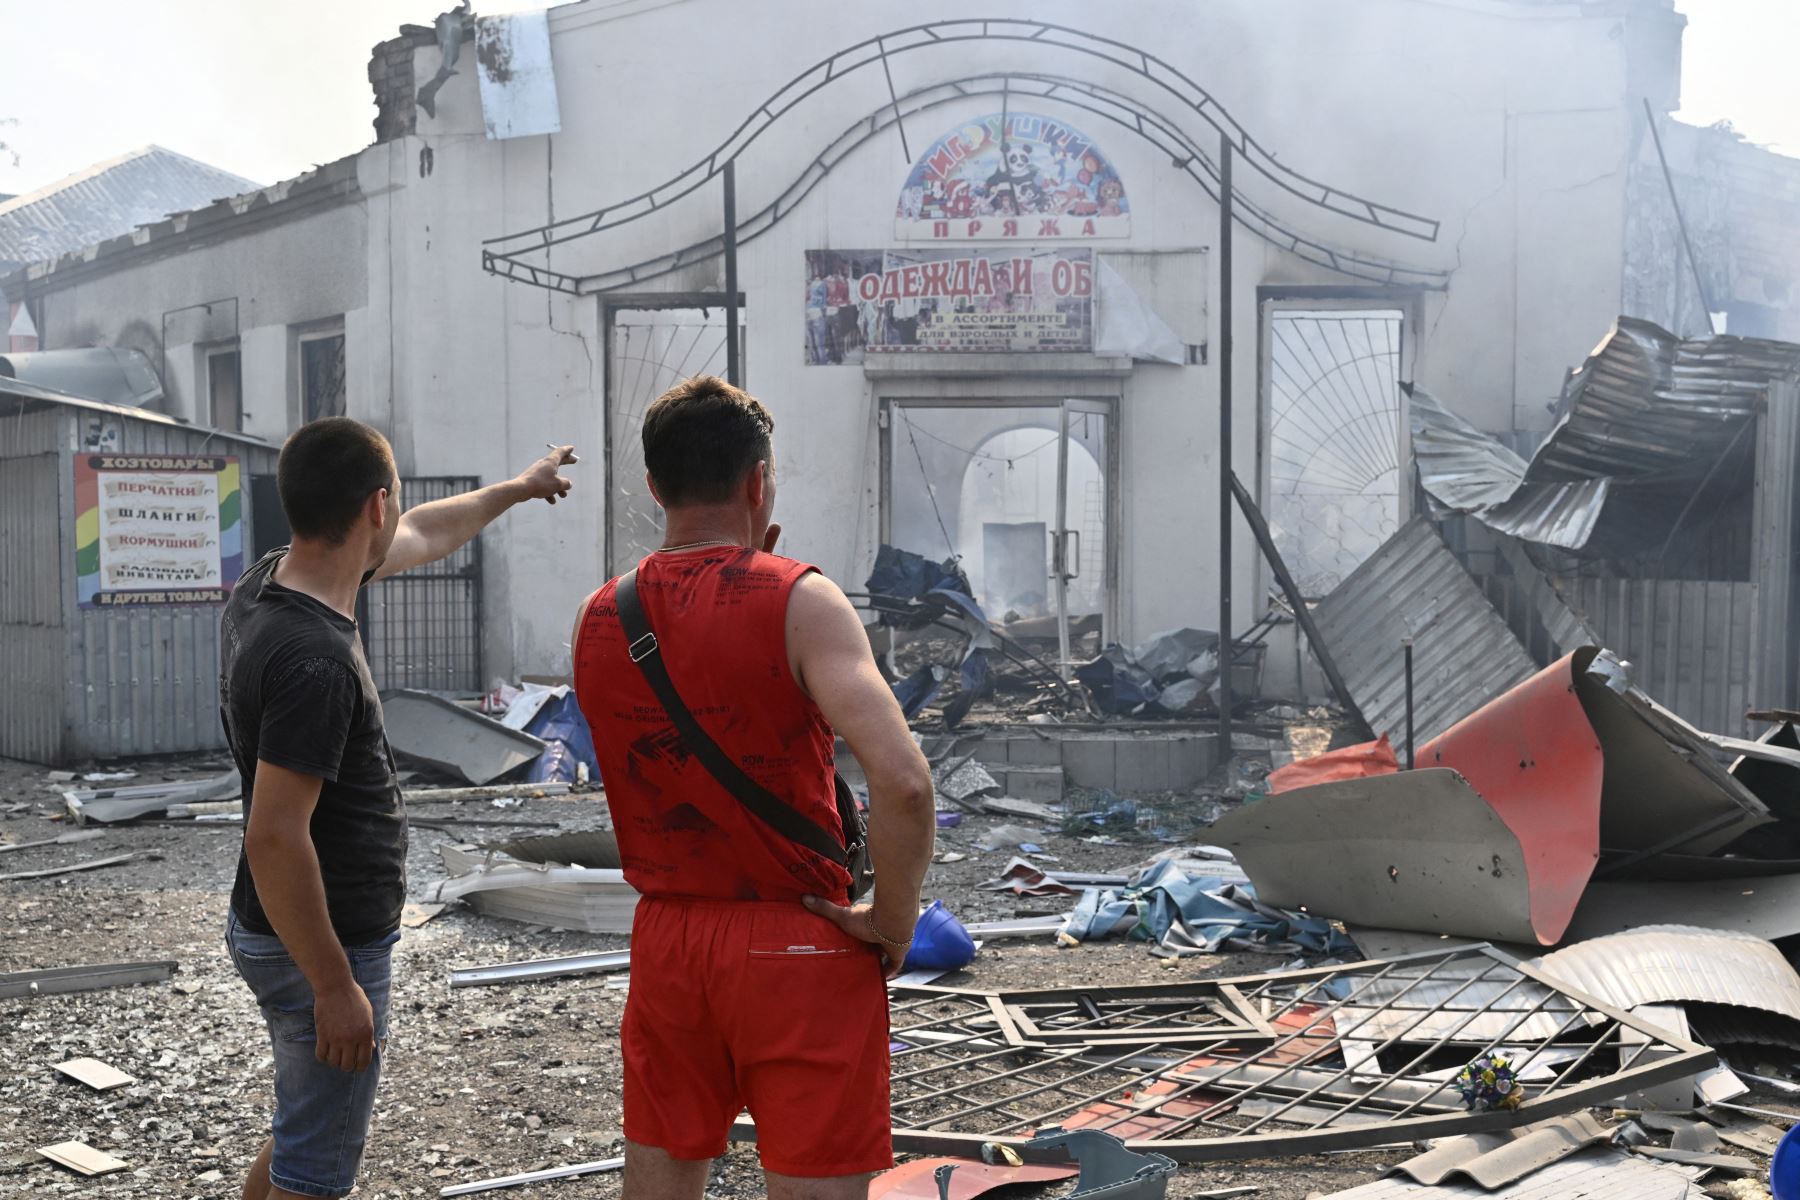 Los residentes locales pasan por las tiendas destruidas en un mercado local después de un ataque con cohetes en la ciudad ucraniana de Sloviansk.
Foto: AFP